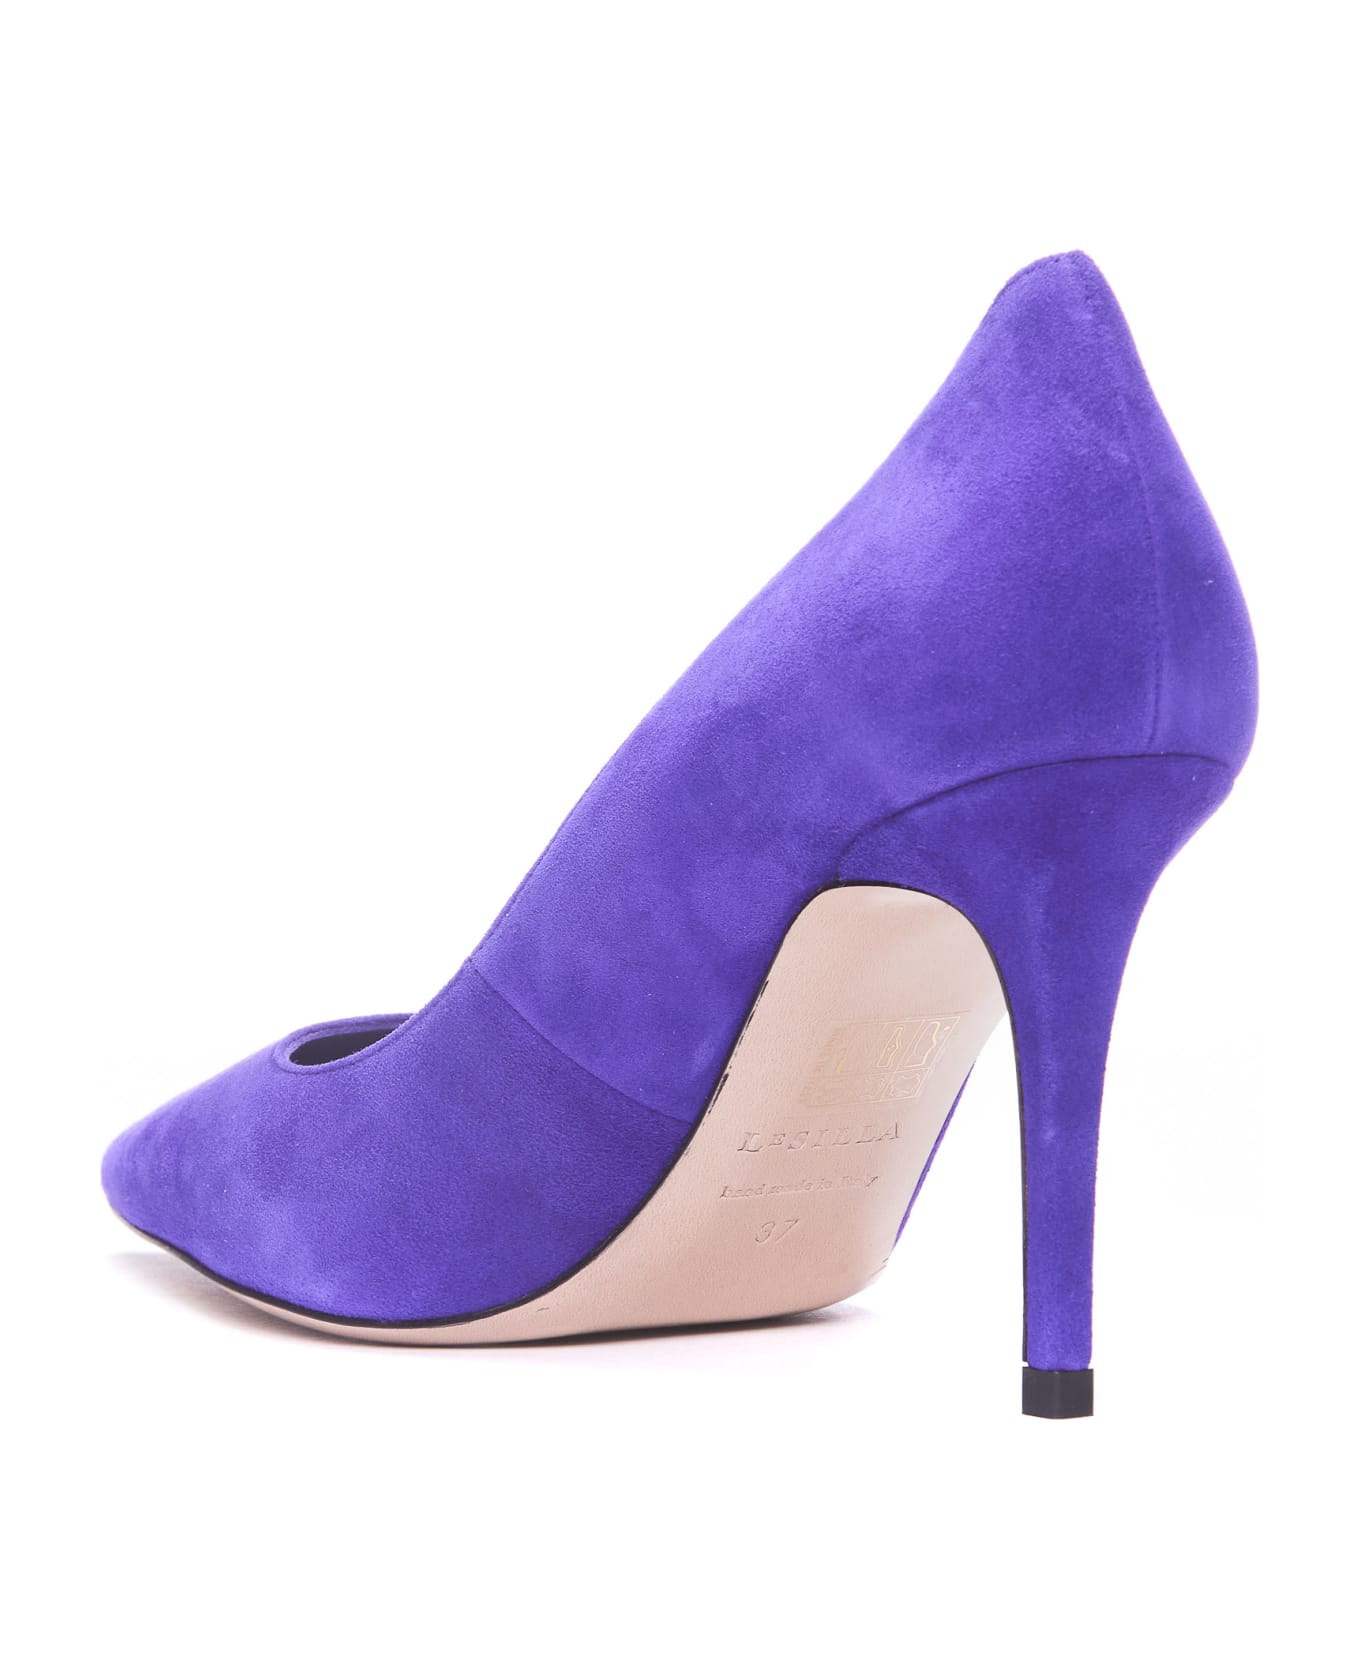 Le Silla Eva Decollete' - Purple